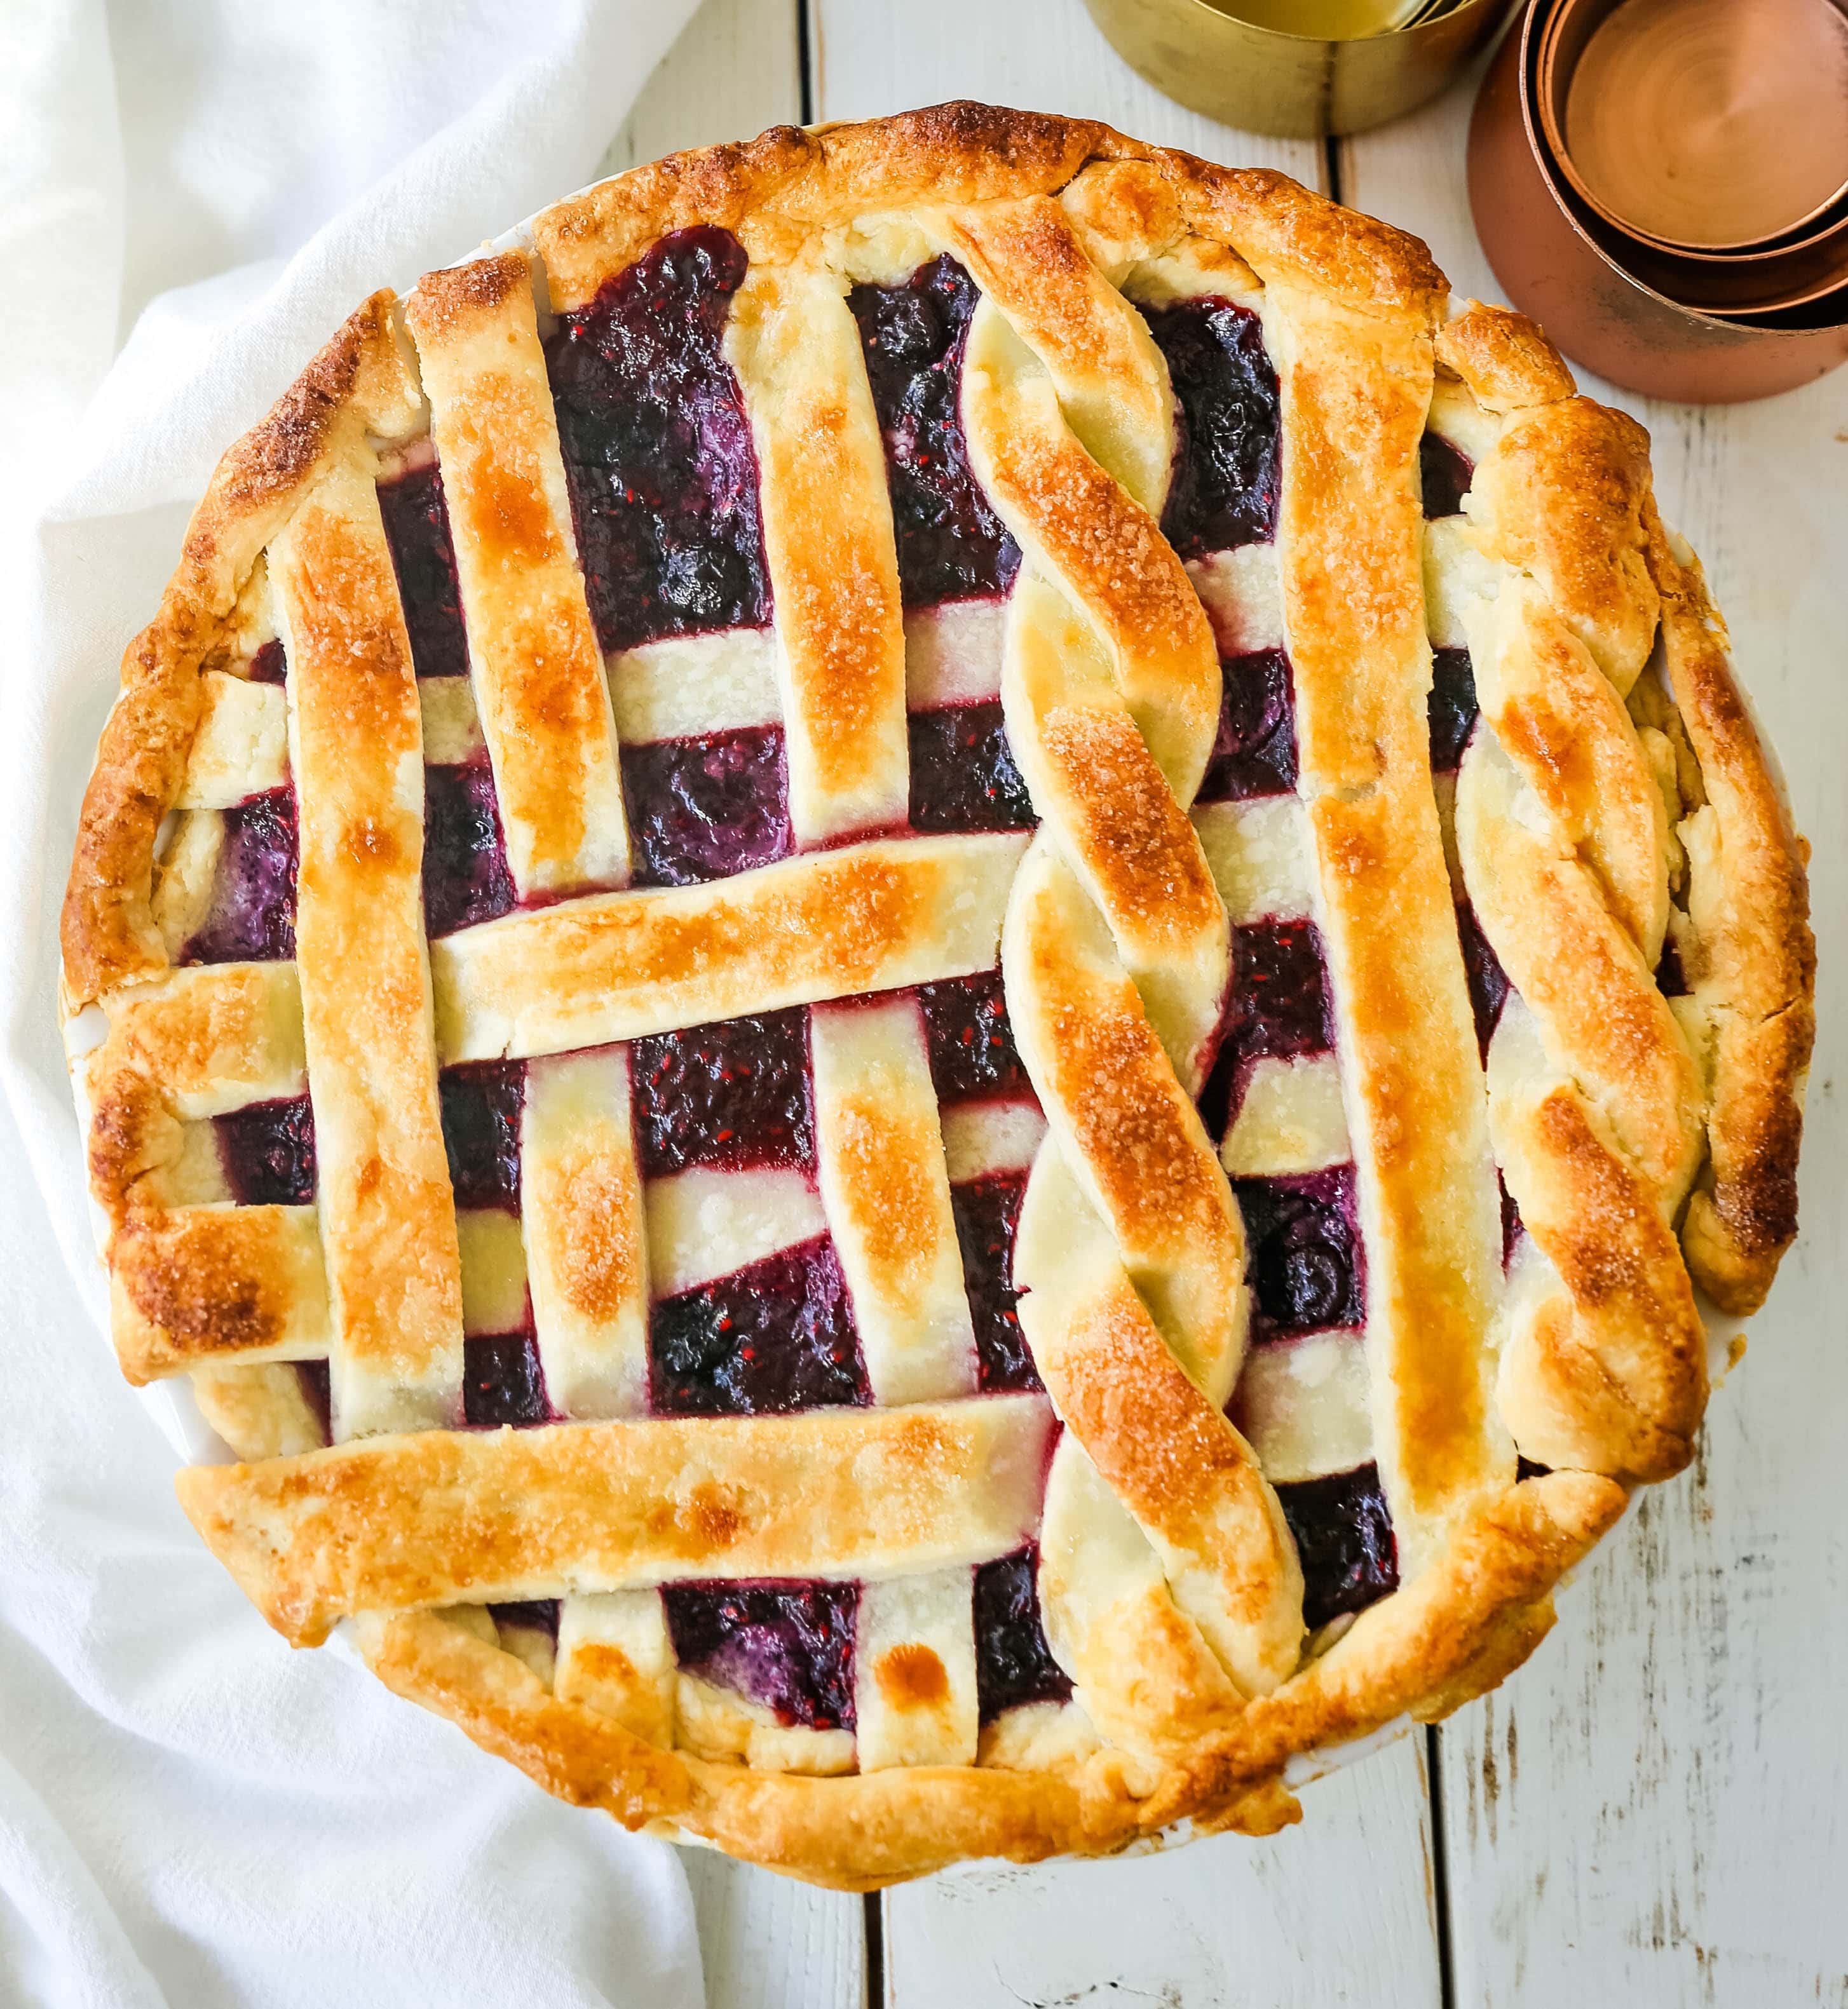 トリプルベリーパイです。 バター風味のパイ生地を使った最高の自家製ベリーパイのレシピです。 バニラビーンズのアイスクリームをのせれば、完璧なベリーデザートの完成です。 最高のベリーパイのレシピです。www.modernhoney.com #berrypie #pie #berries #tripleberrypie #thanksgiving